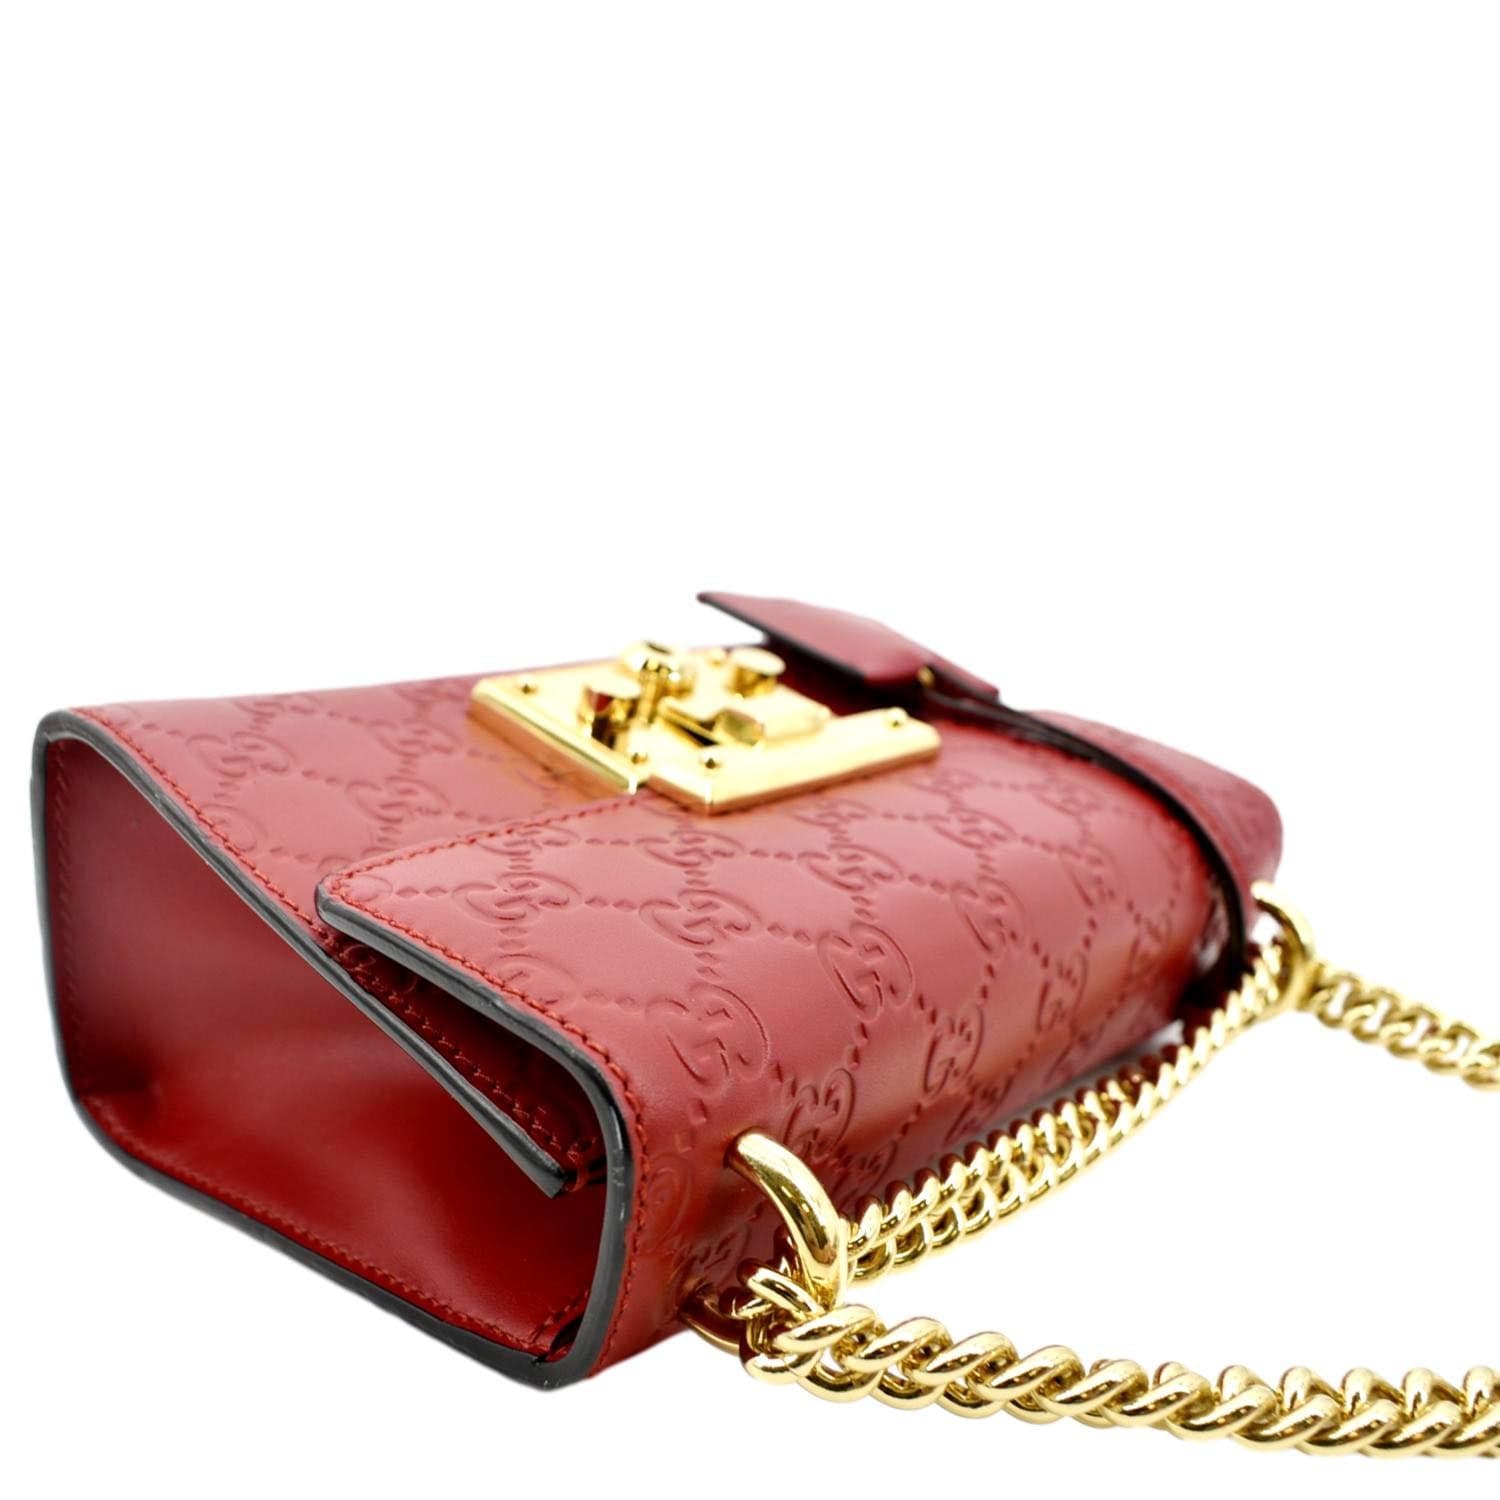 Gucci Padlock Gucci Signature Shoulder Bag - Farfetch